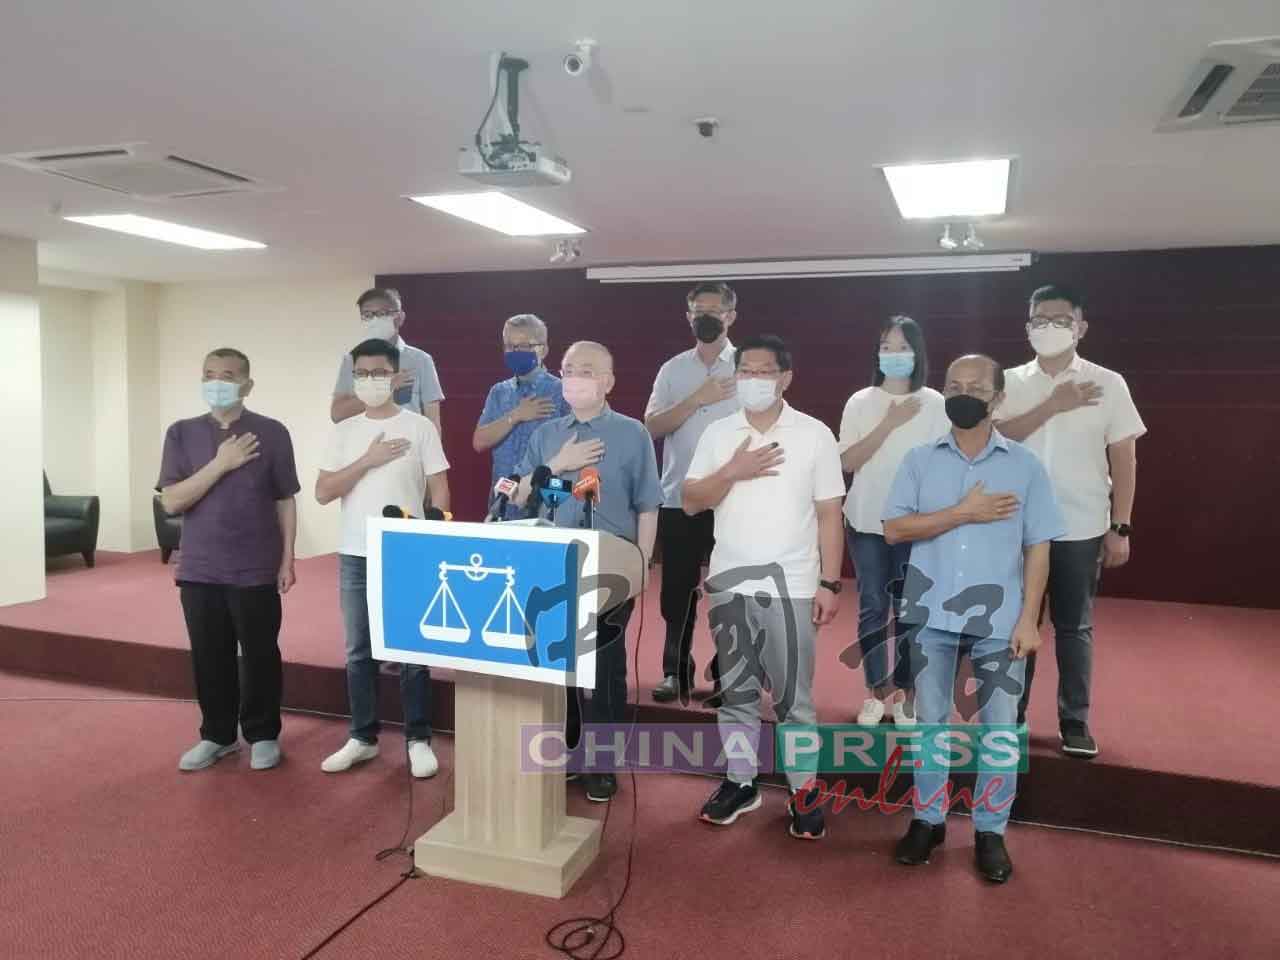 魏家祥（前排左3）带领马华领袖与候选人感谢选民的支持。